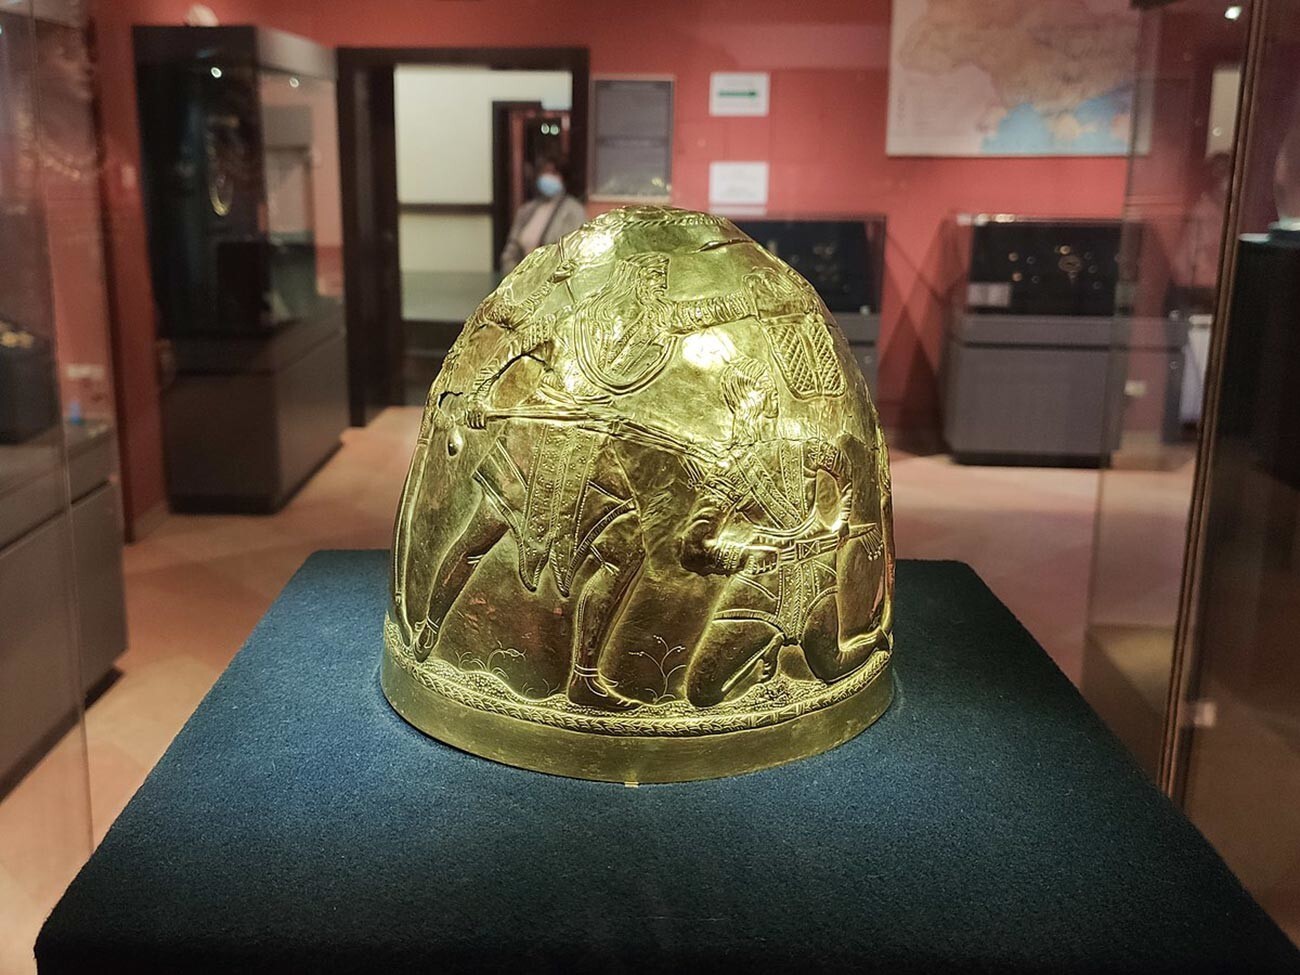 Helm emas upacara penguasa Skithia. Abad ke-4 SM. Ditemukan pada 1988 di dekat Desa Zrubne, Donetsk, Ukraina. Pameran Museum Harta Karun Sejarah Ukraina.